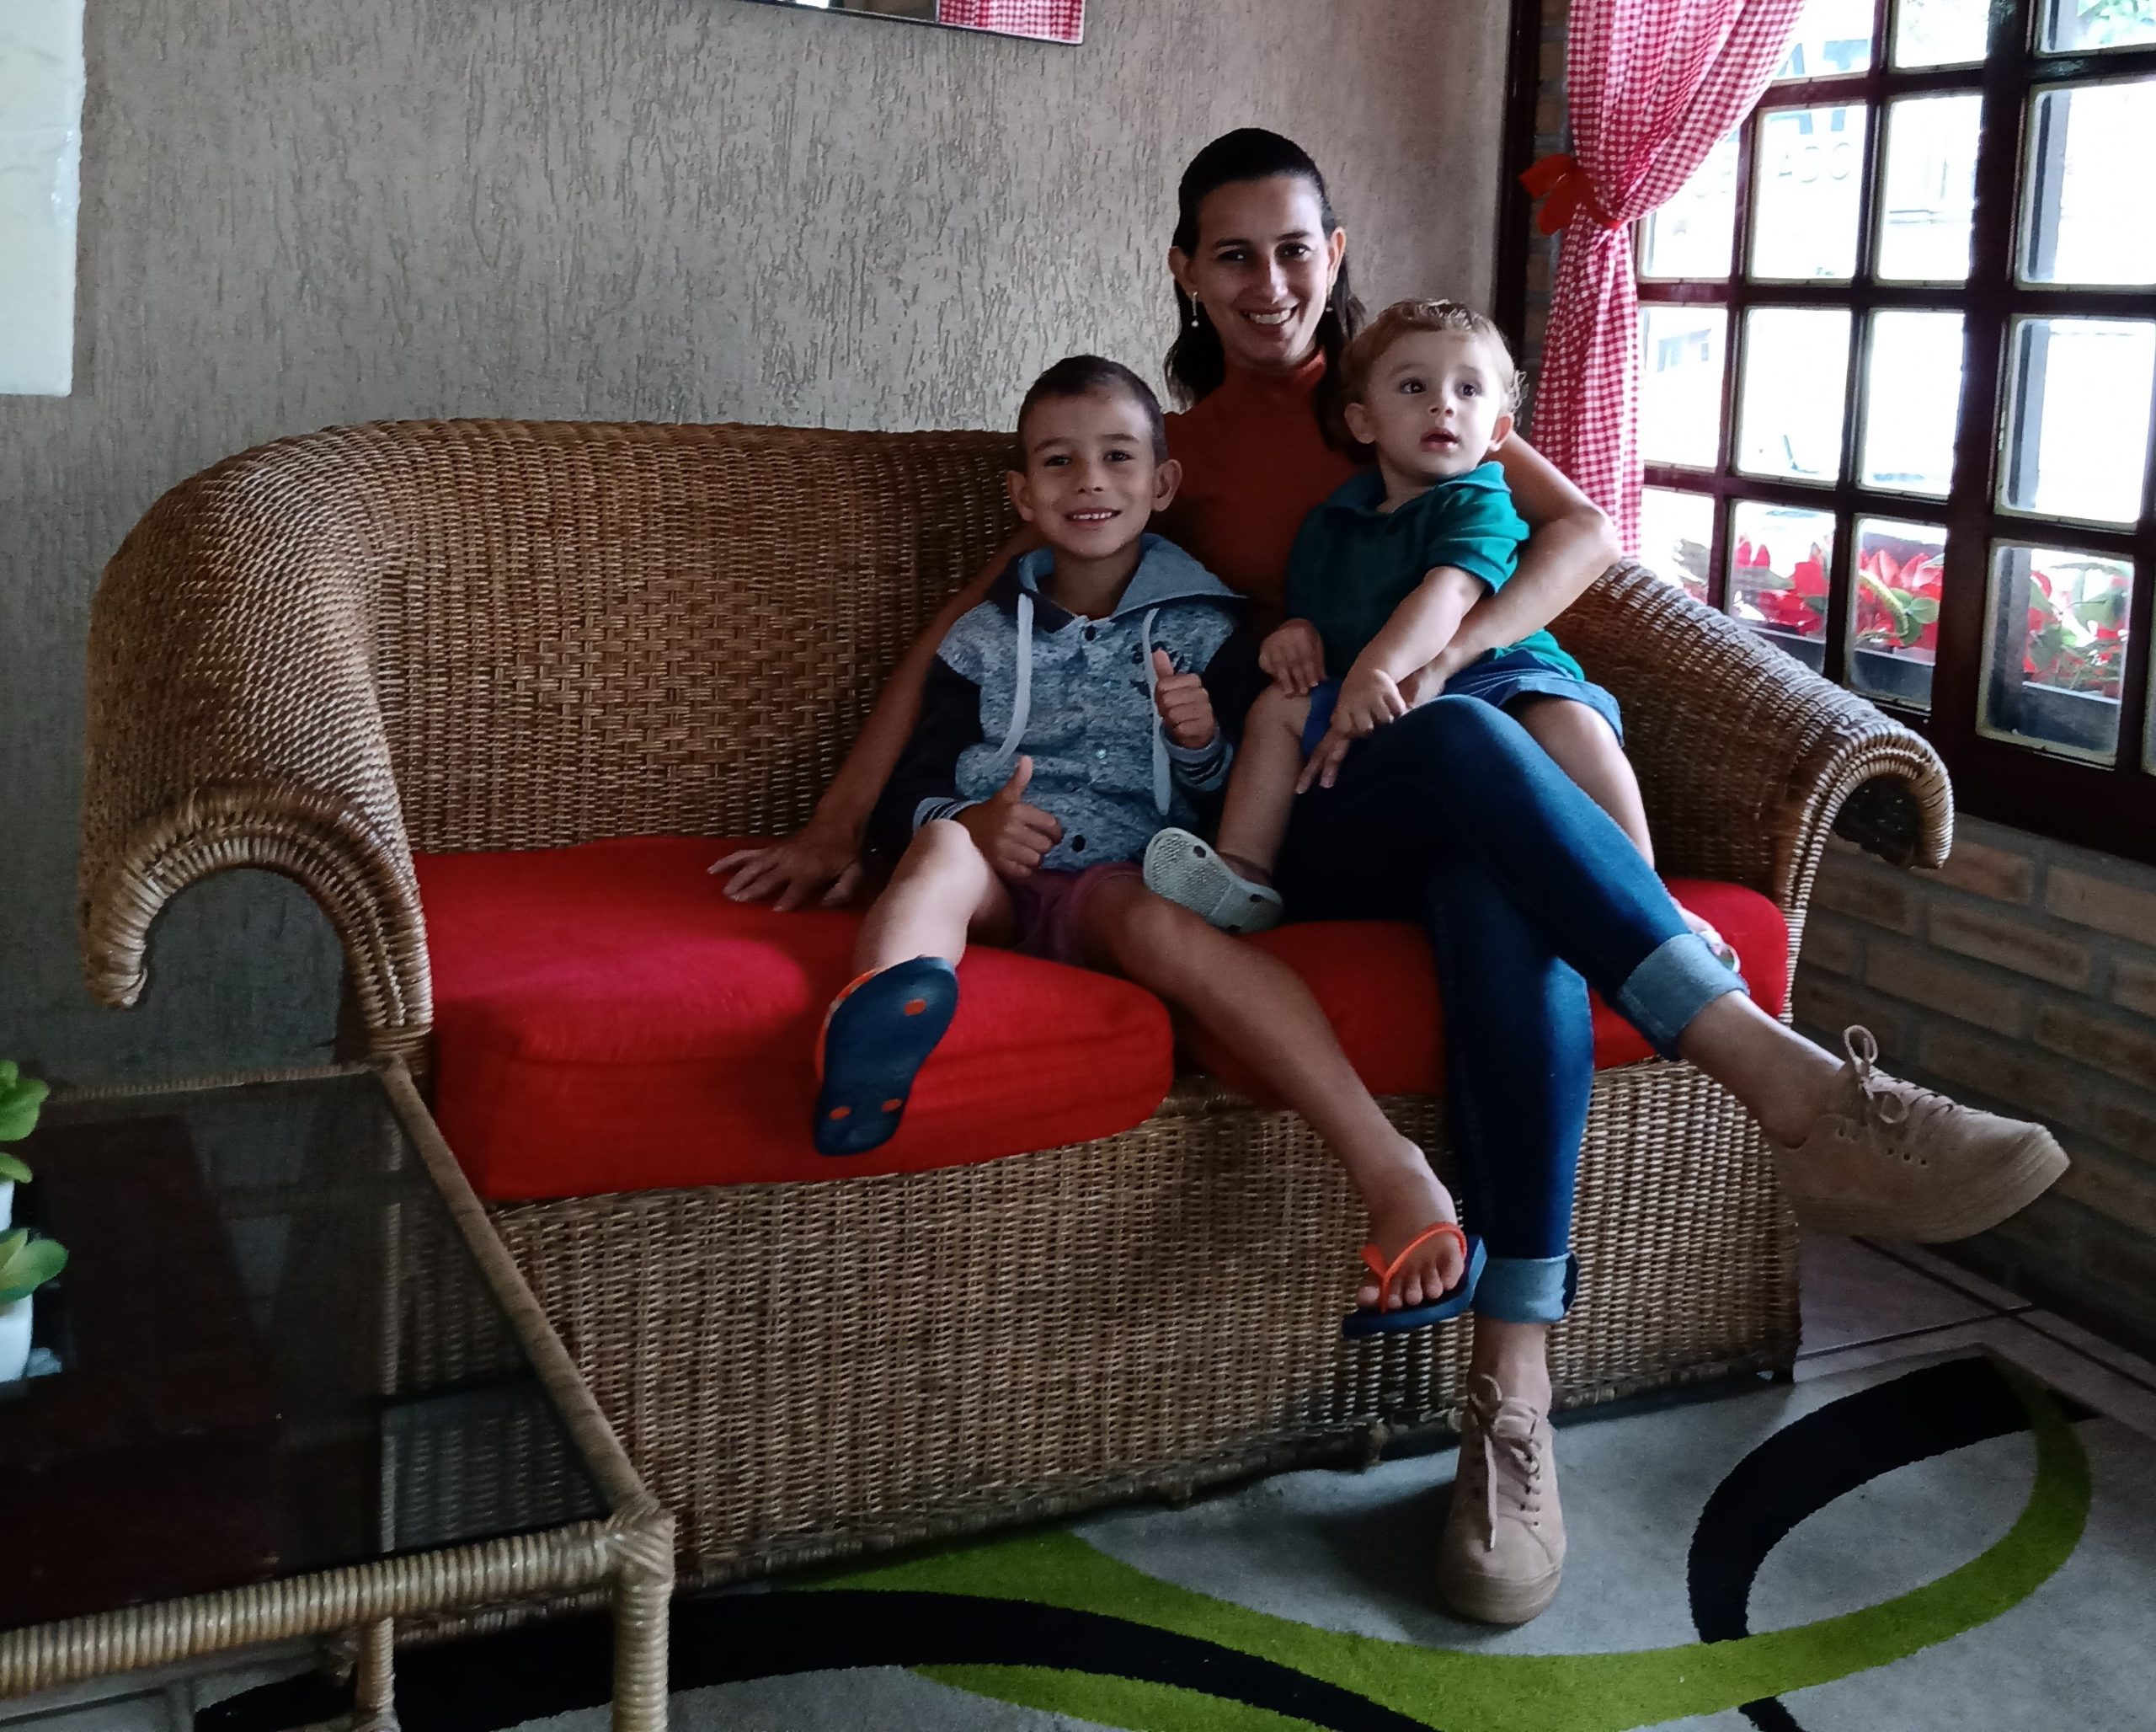 Uma mulher de cabelos presos e amarrados, sentada em um sofá com duas crianças no colo